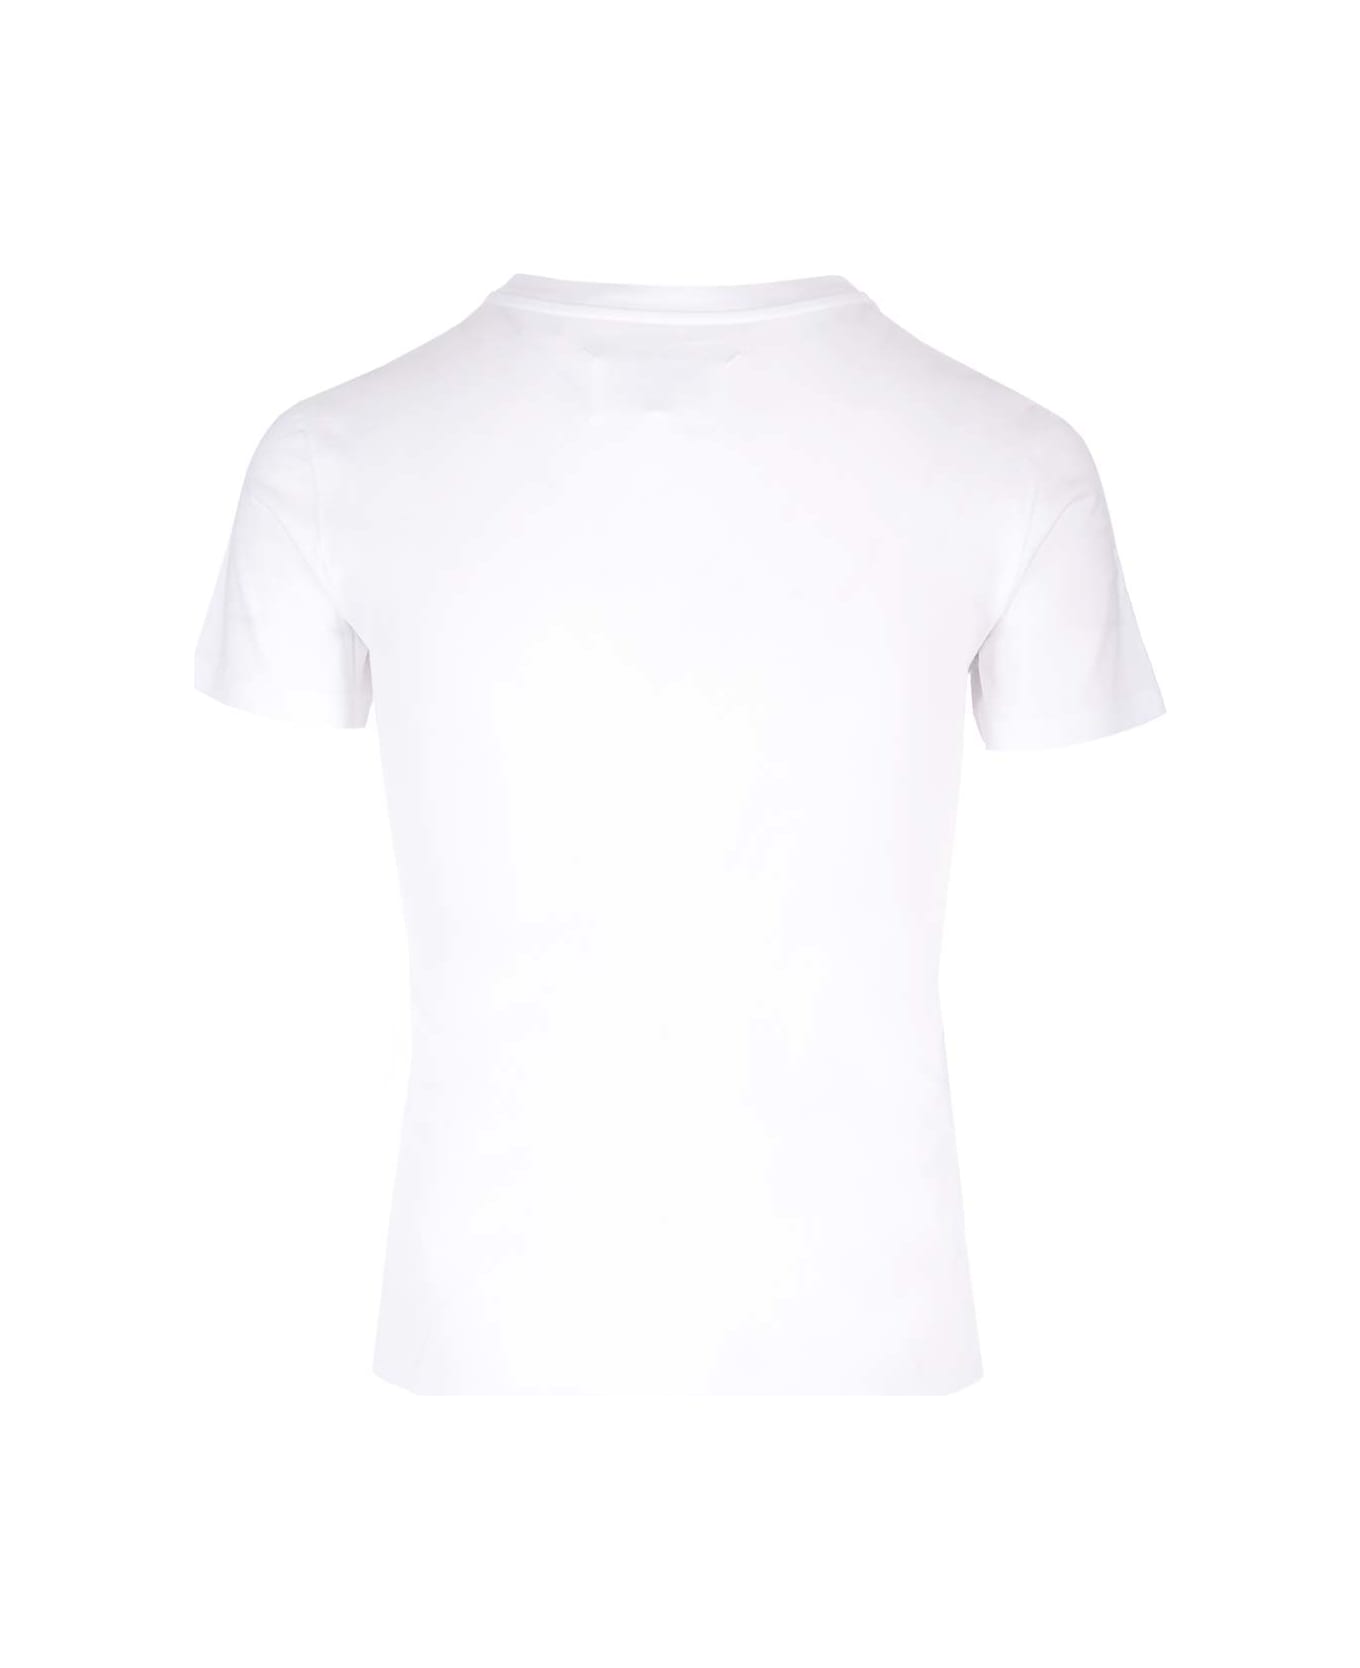 Maison Margiela Cotton T-shirt - White Tシャツ